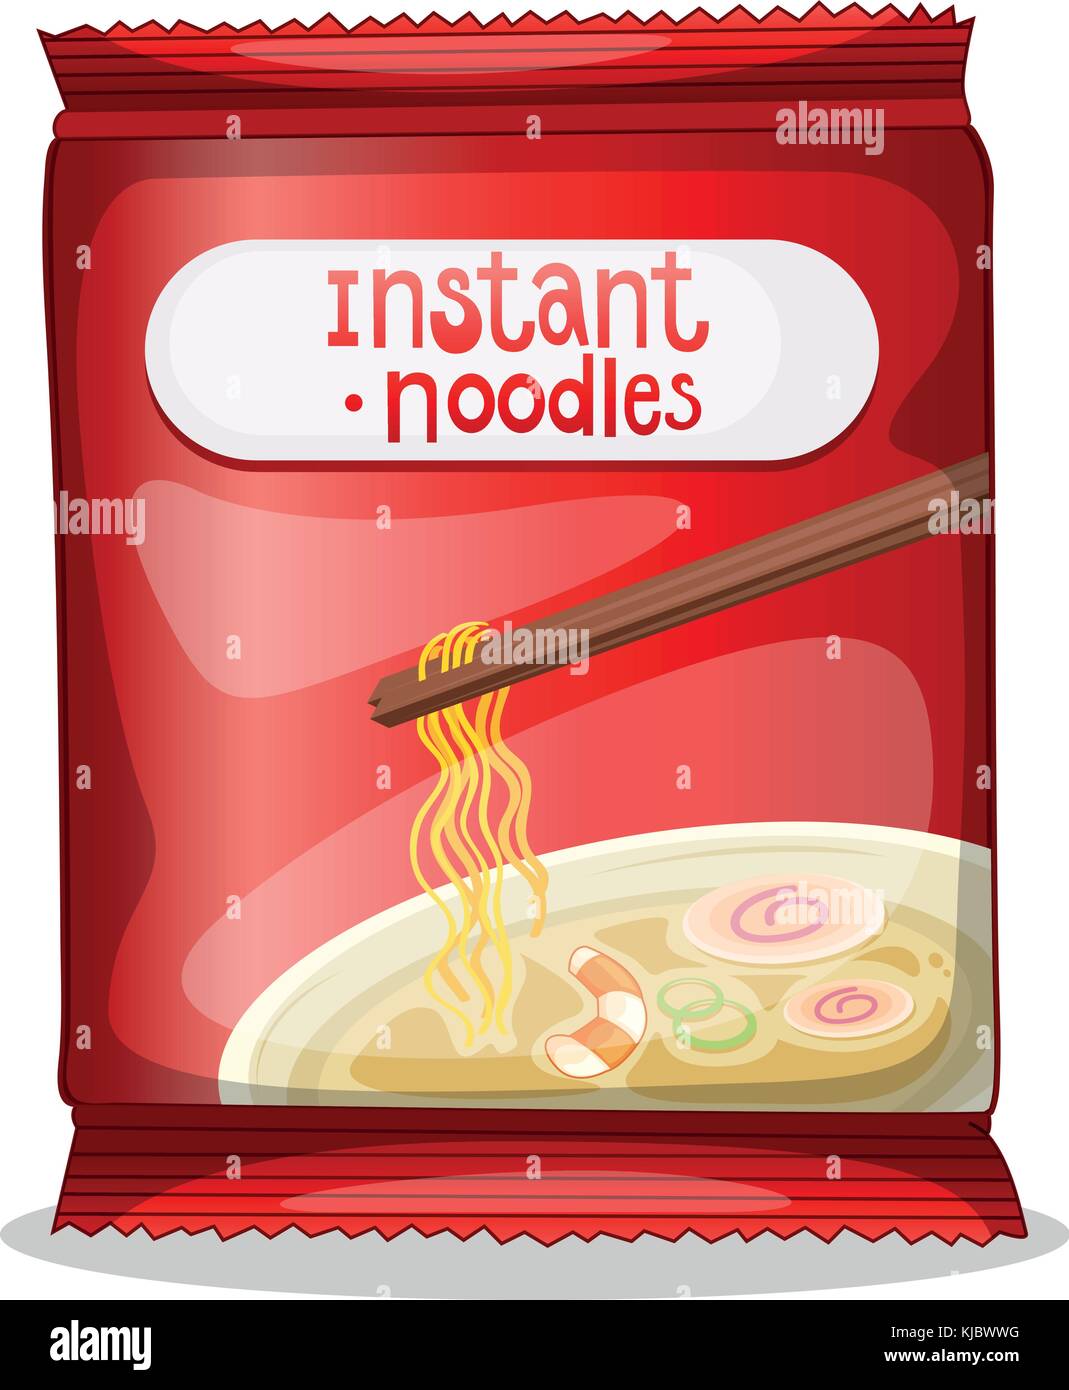 https://c8.alamy.com/comp/KJBWWG/illustration-of-a-pack-of-an-instant-noodles-on-a-white-background-KJBWWG.jpg